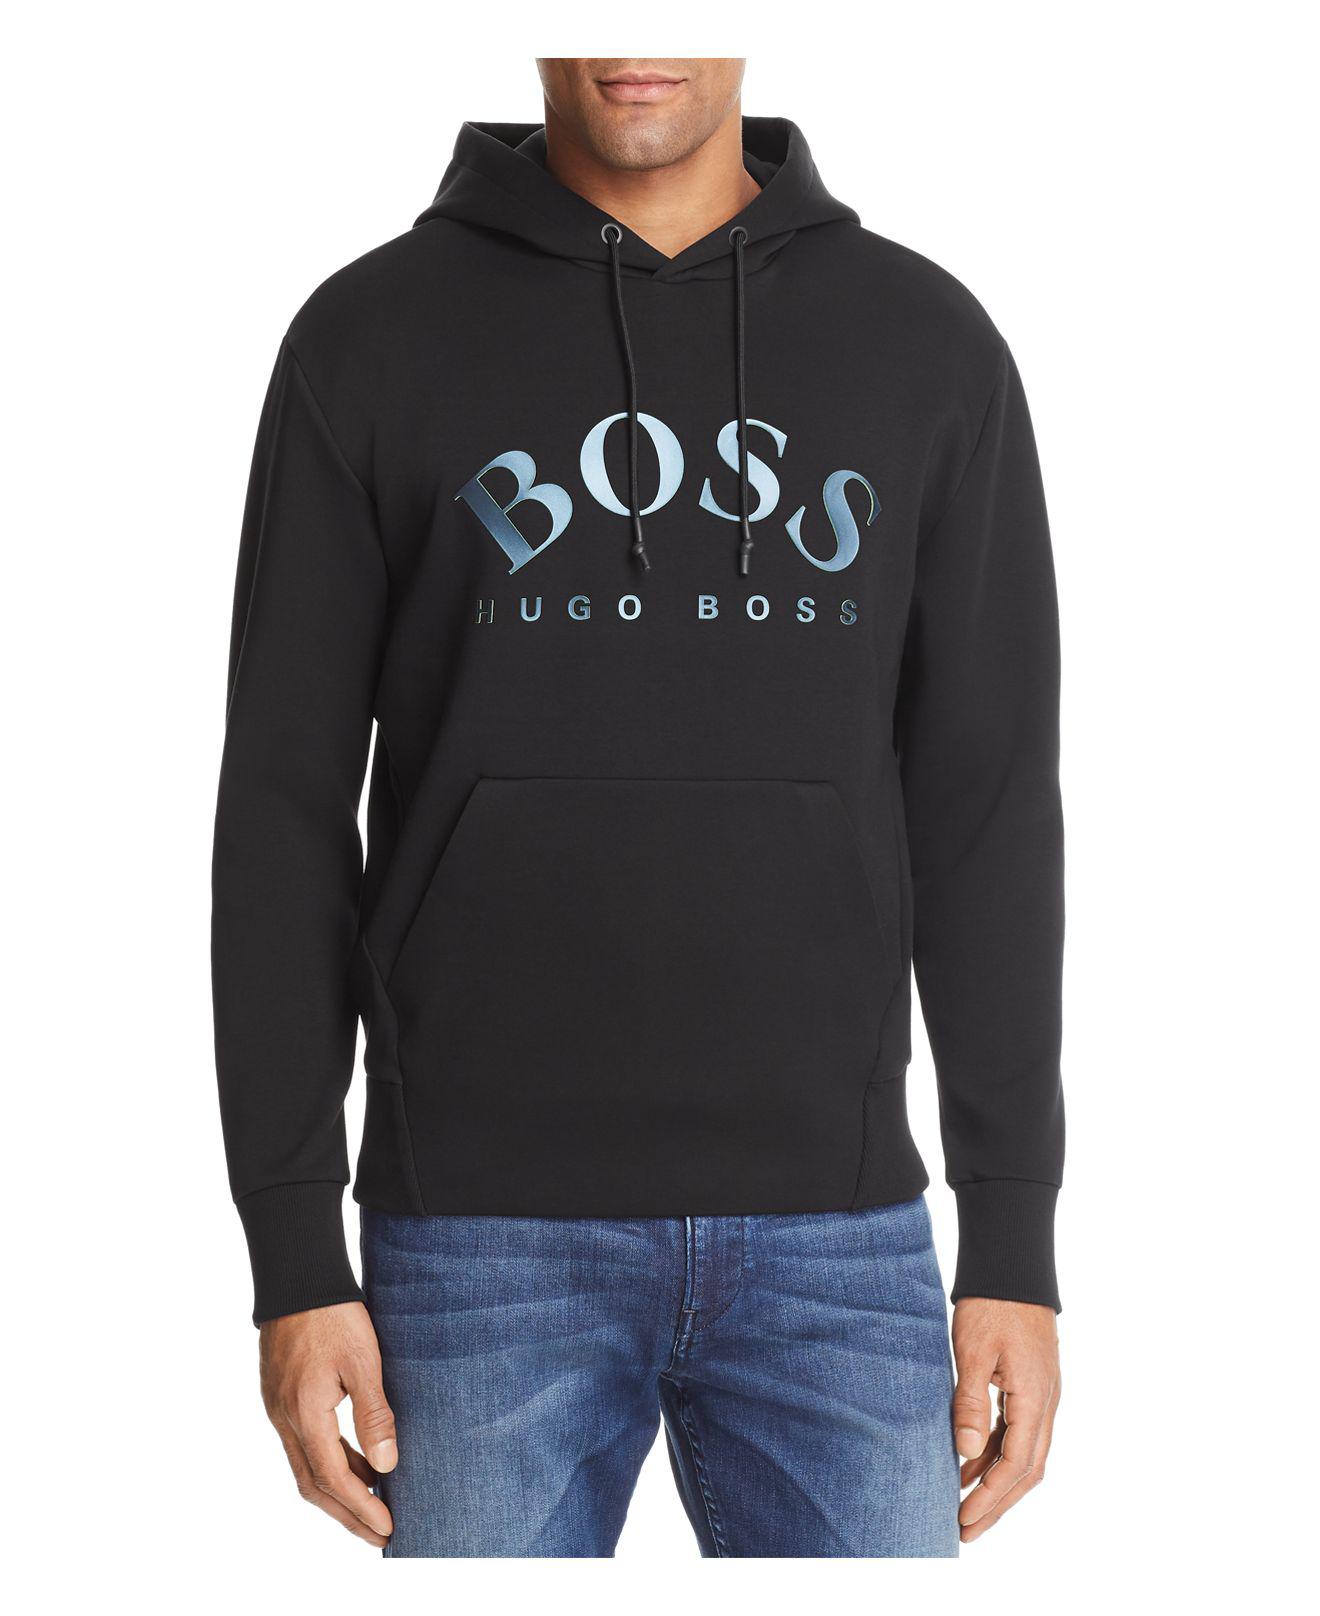 boss hoody